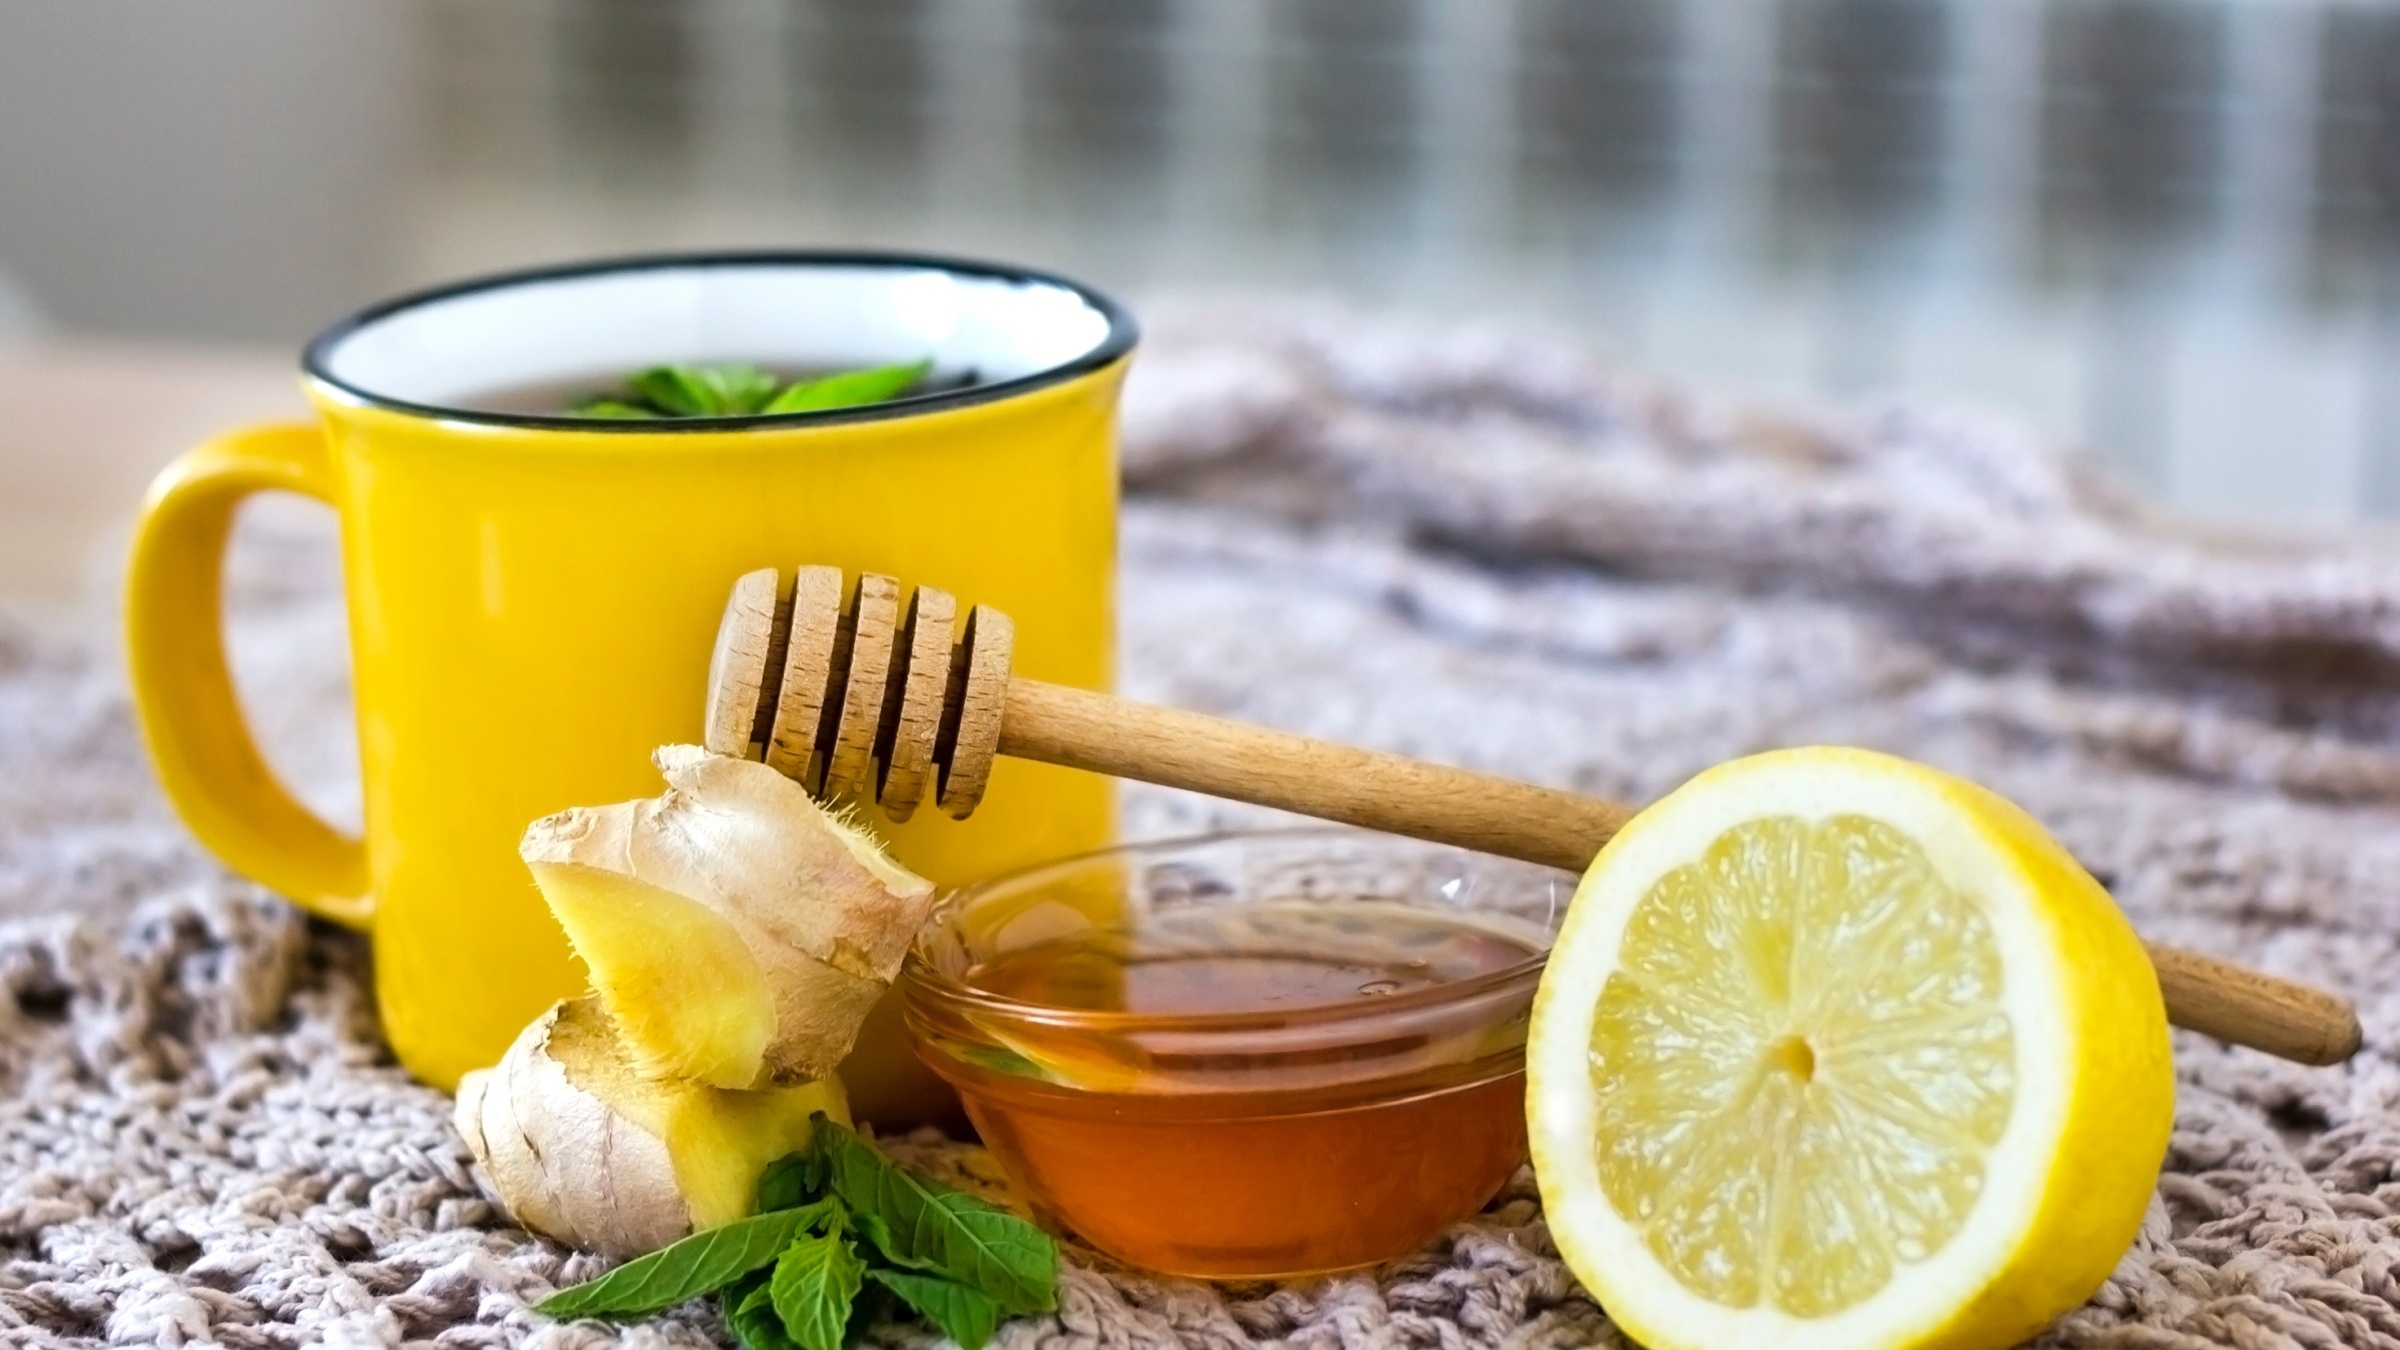 Có thể thêm gì vào nước chanh mật ong để tạo hương vị đặc biệt?
